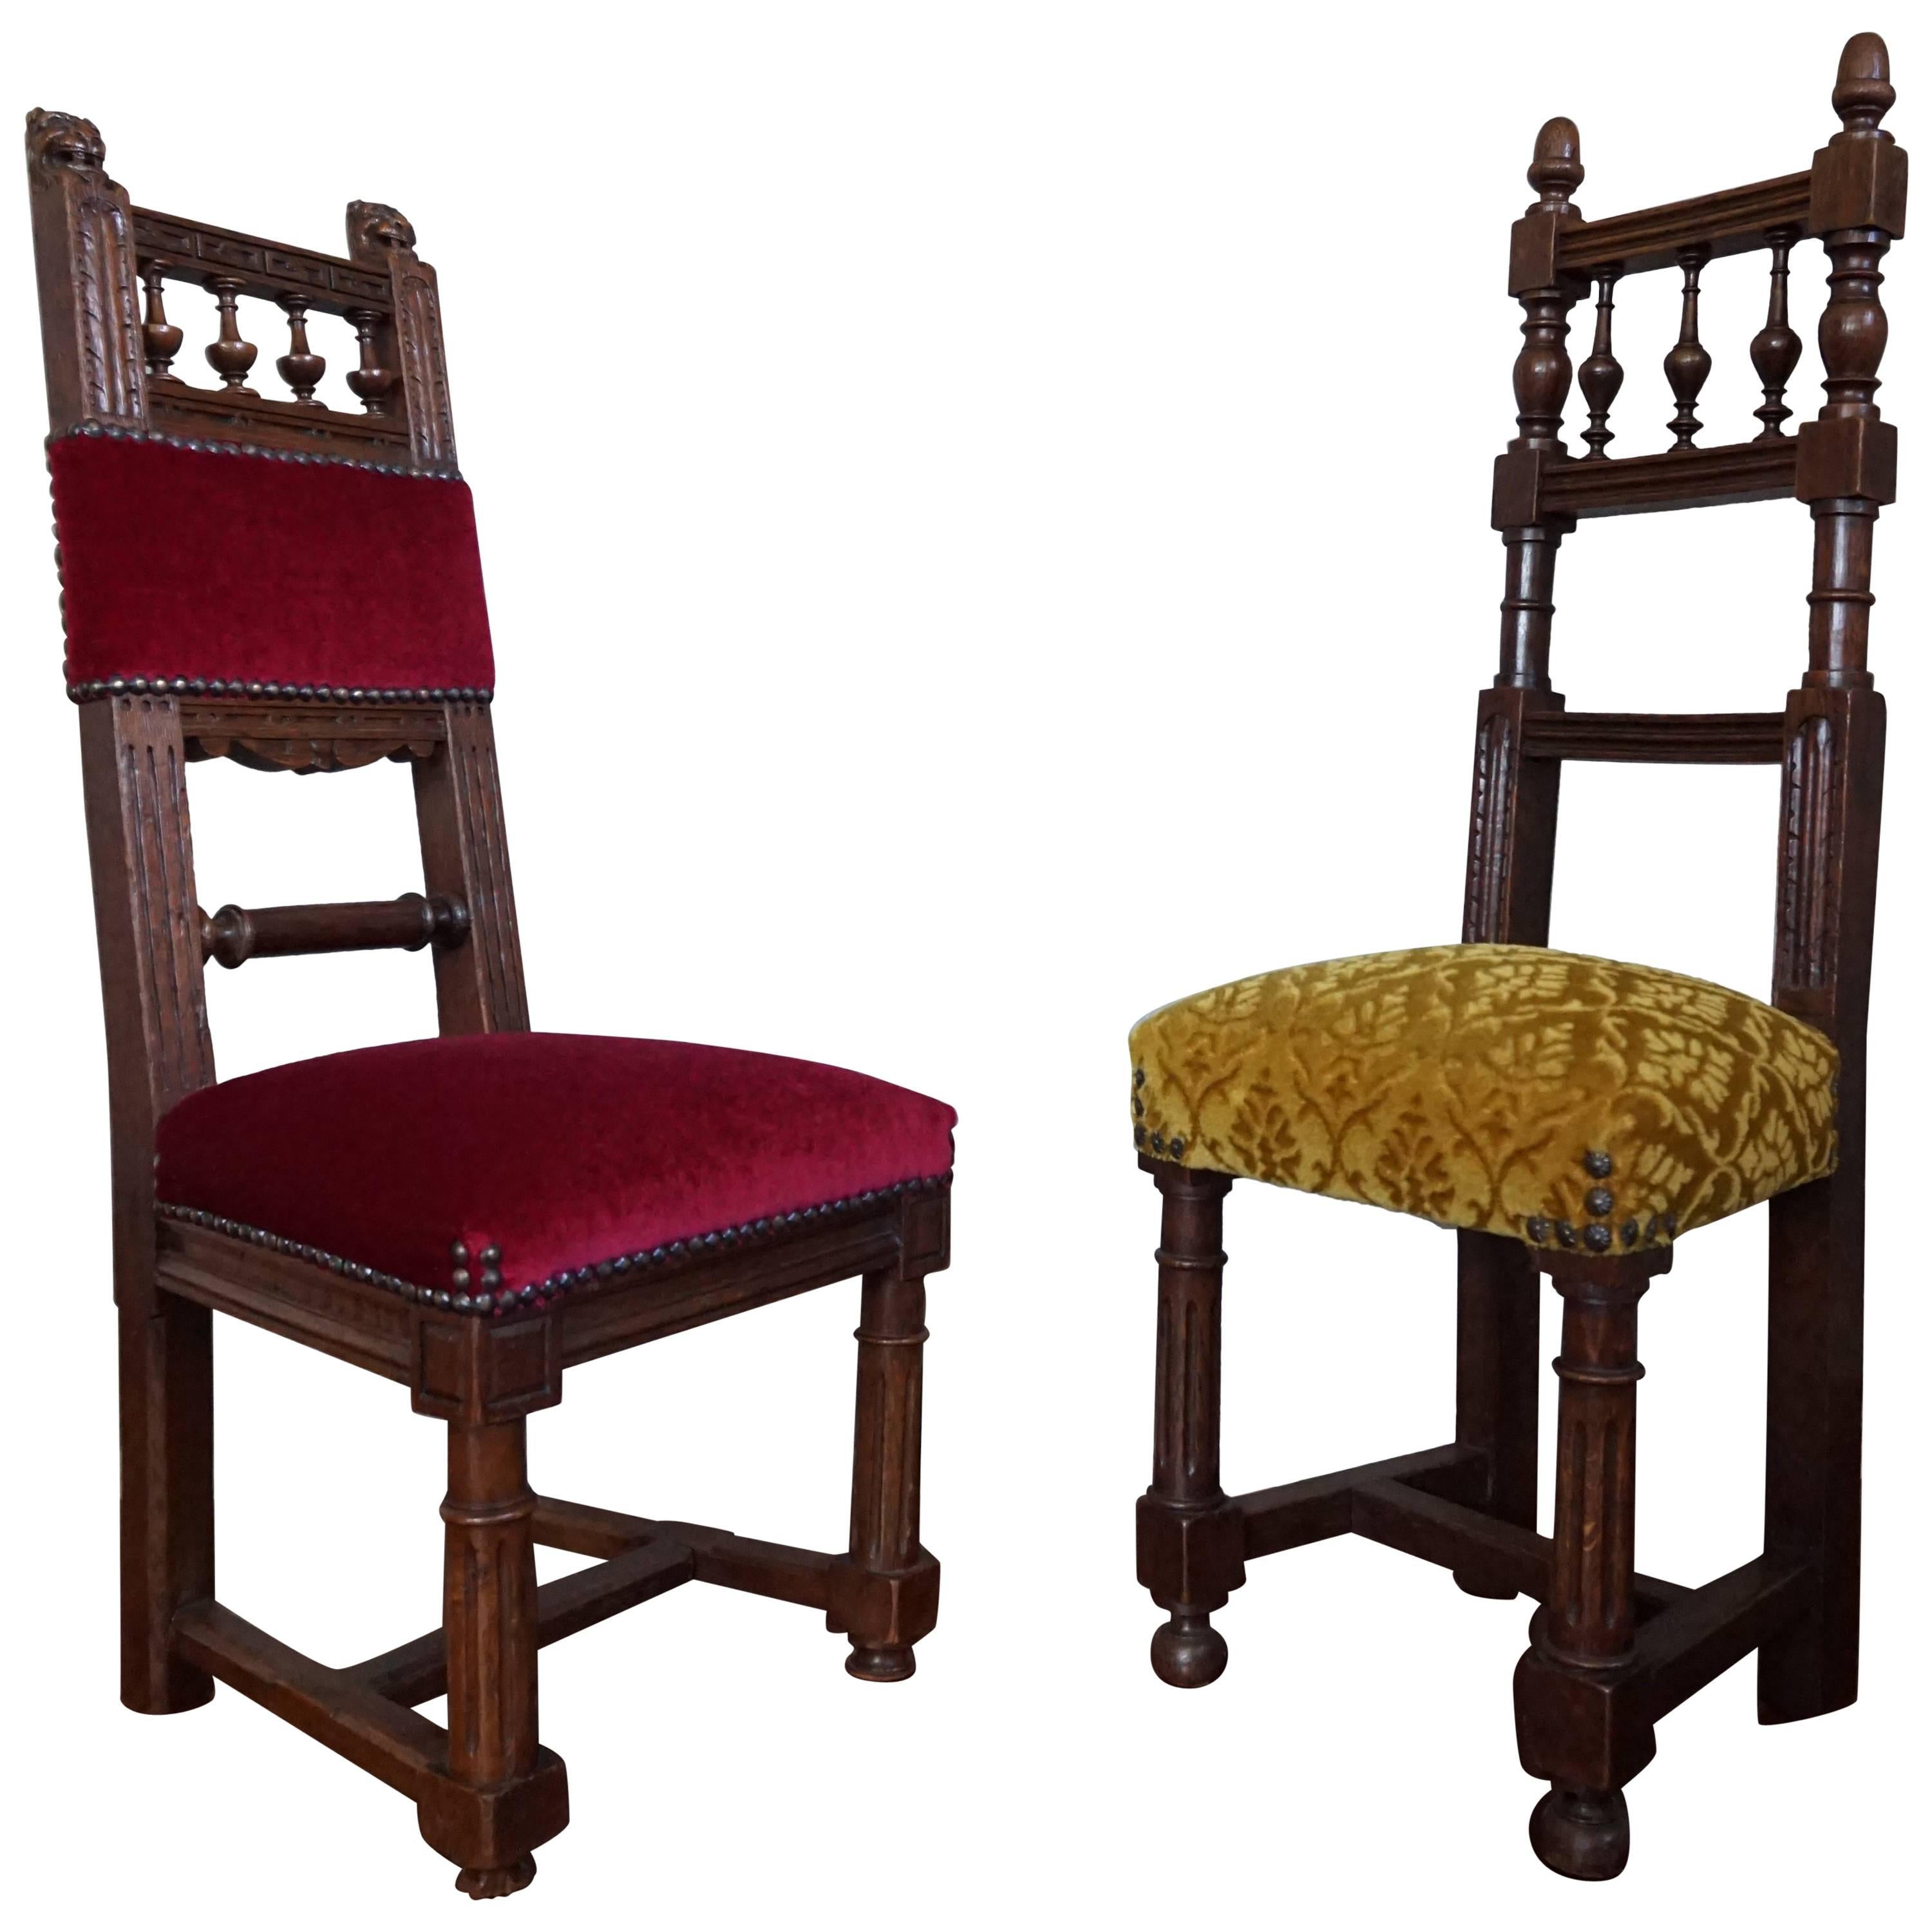 Deux excellentes et rares chaises en chêne massif fabriquées à la main pour les petits enfants ou les poupées